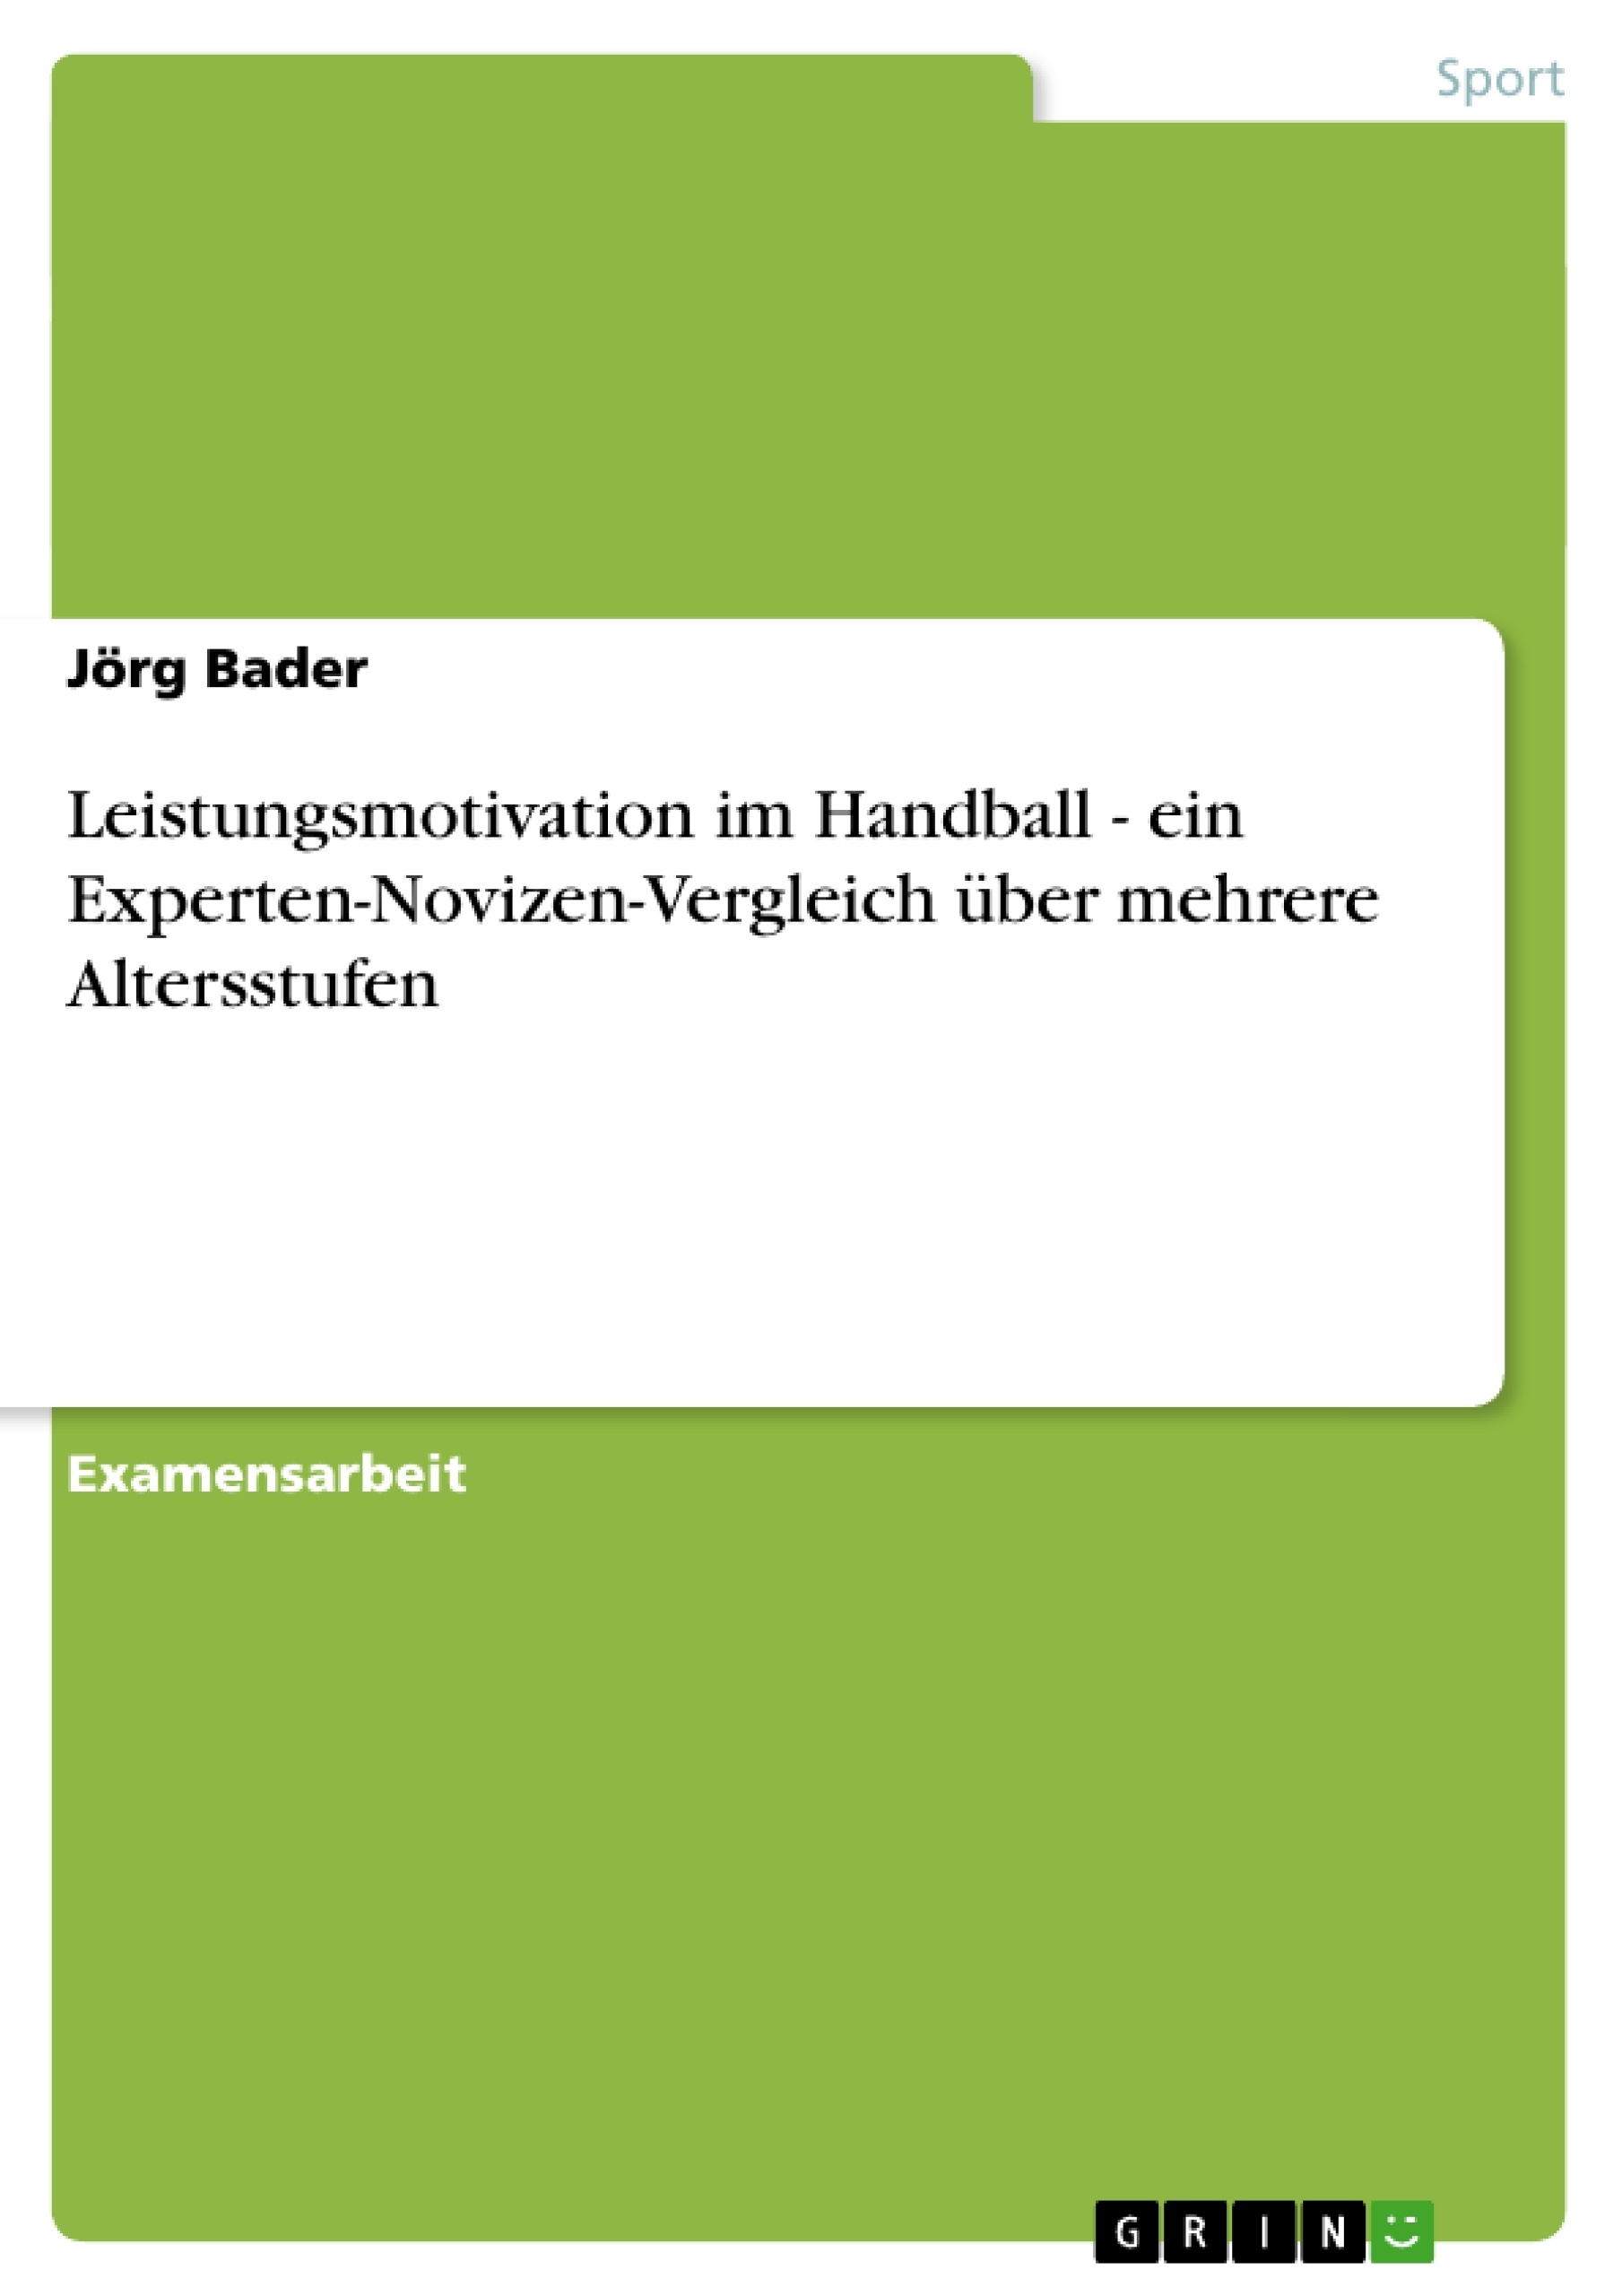 Título: Leistungsmotivation im Handball - ein Experten-Novizen-Vergleich über mehrere Altersstufen